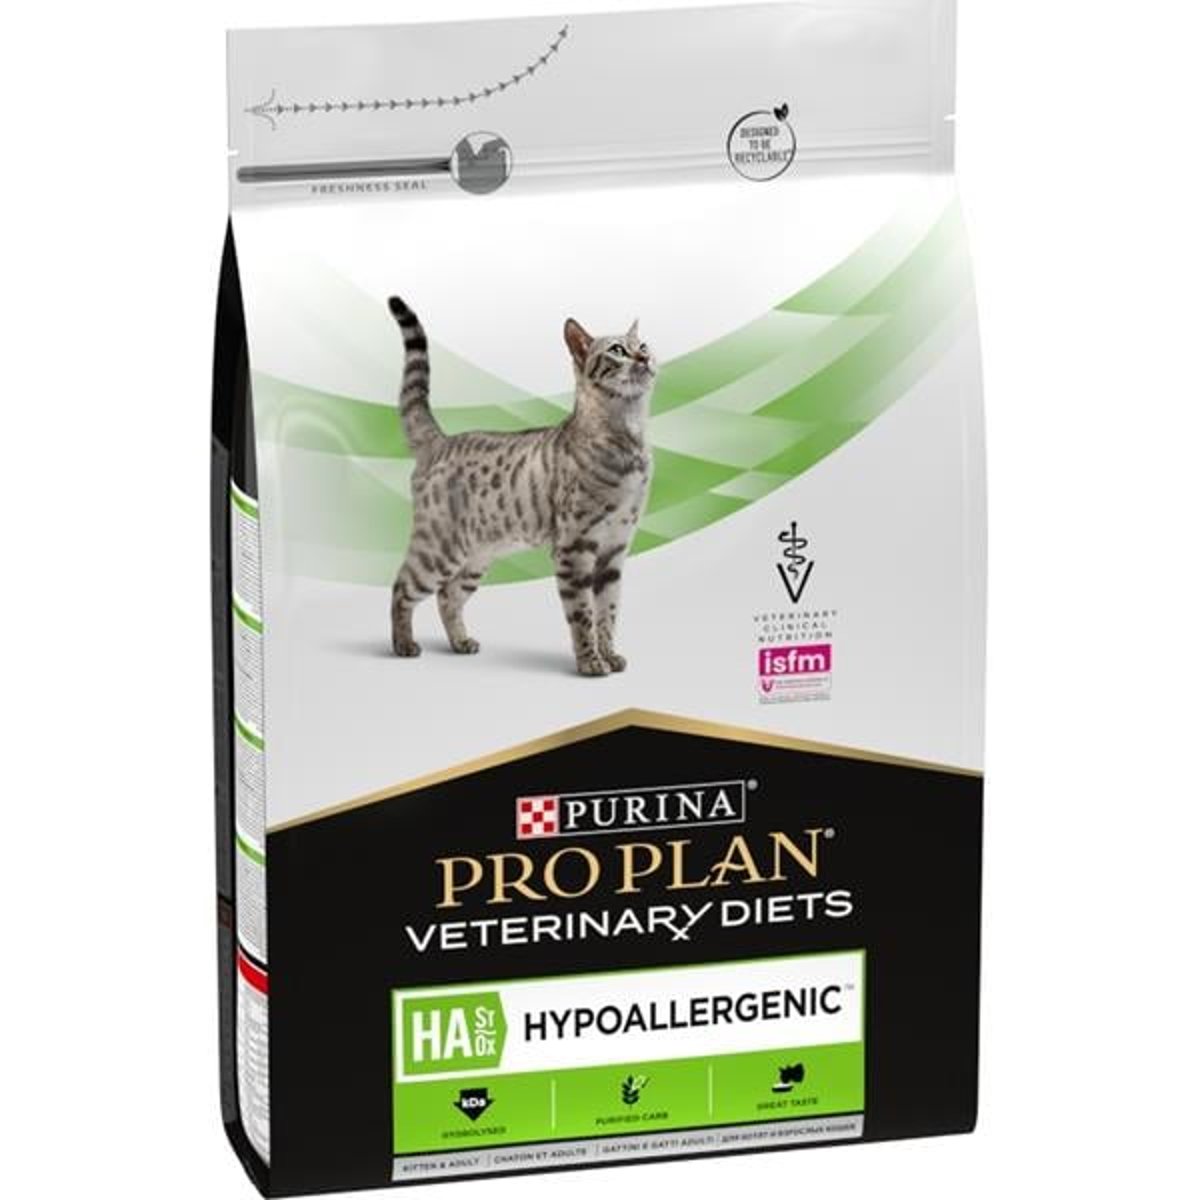 Pro Plan Veterinary Diets Hypoallergenic krmivo pro koťata a dospělé kočky